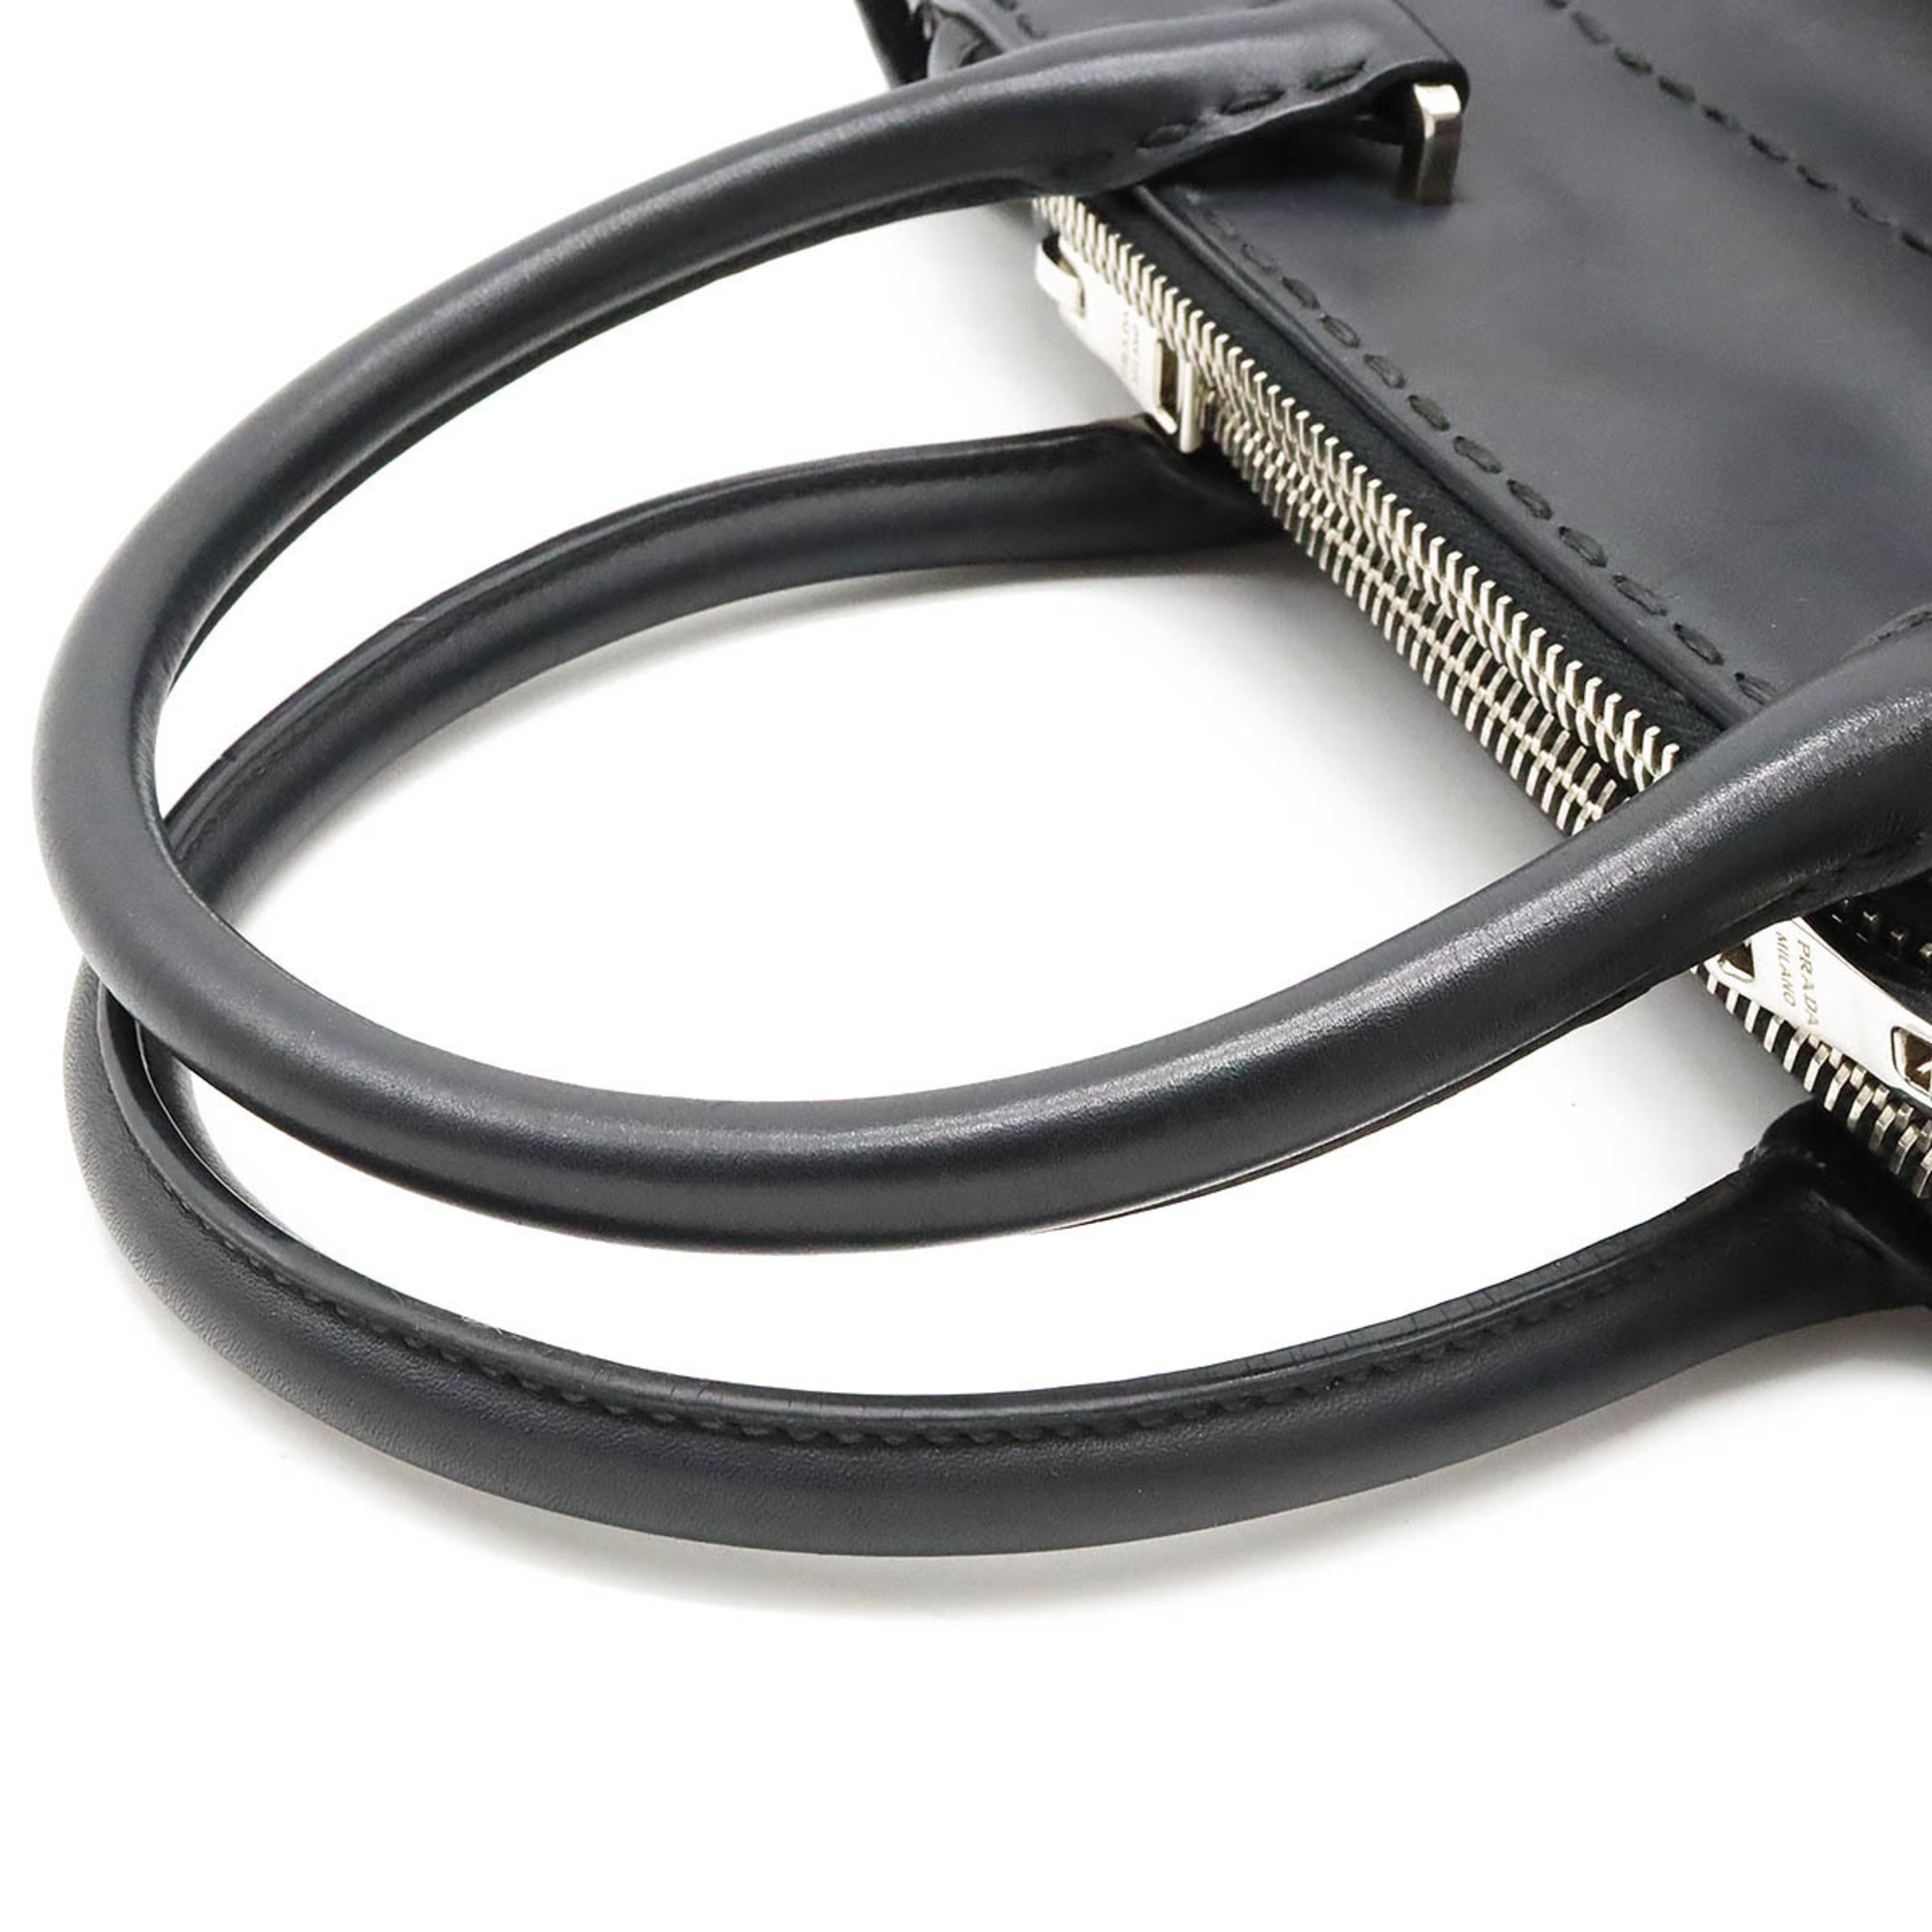 PRADA Prada Handbag Shoulder Bag City Calf Leather NERO Black B2861K